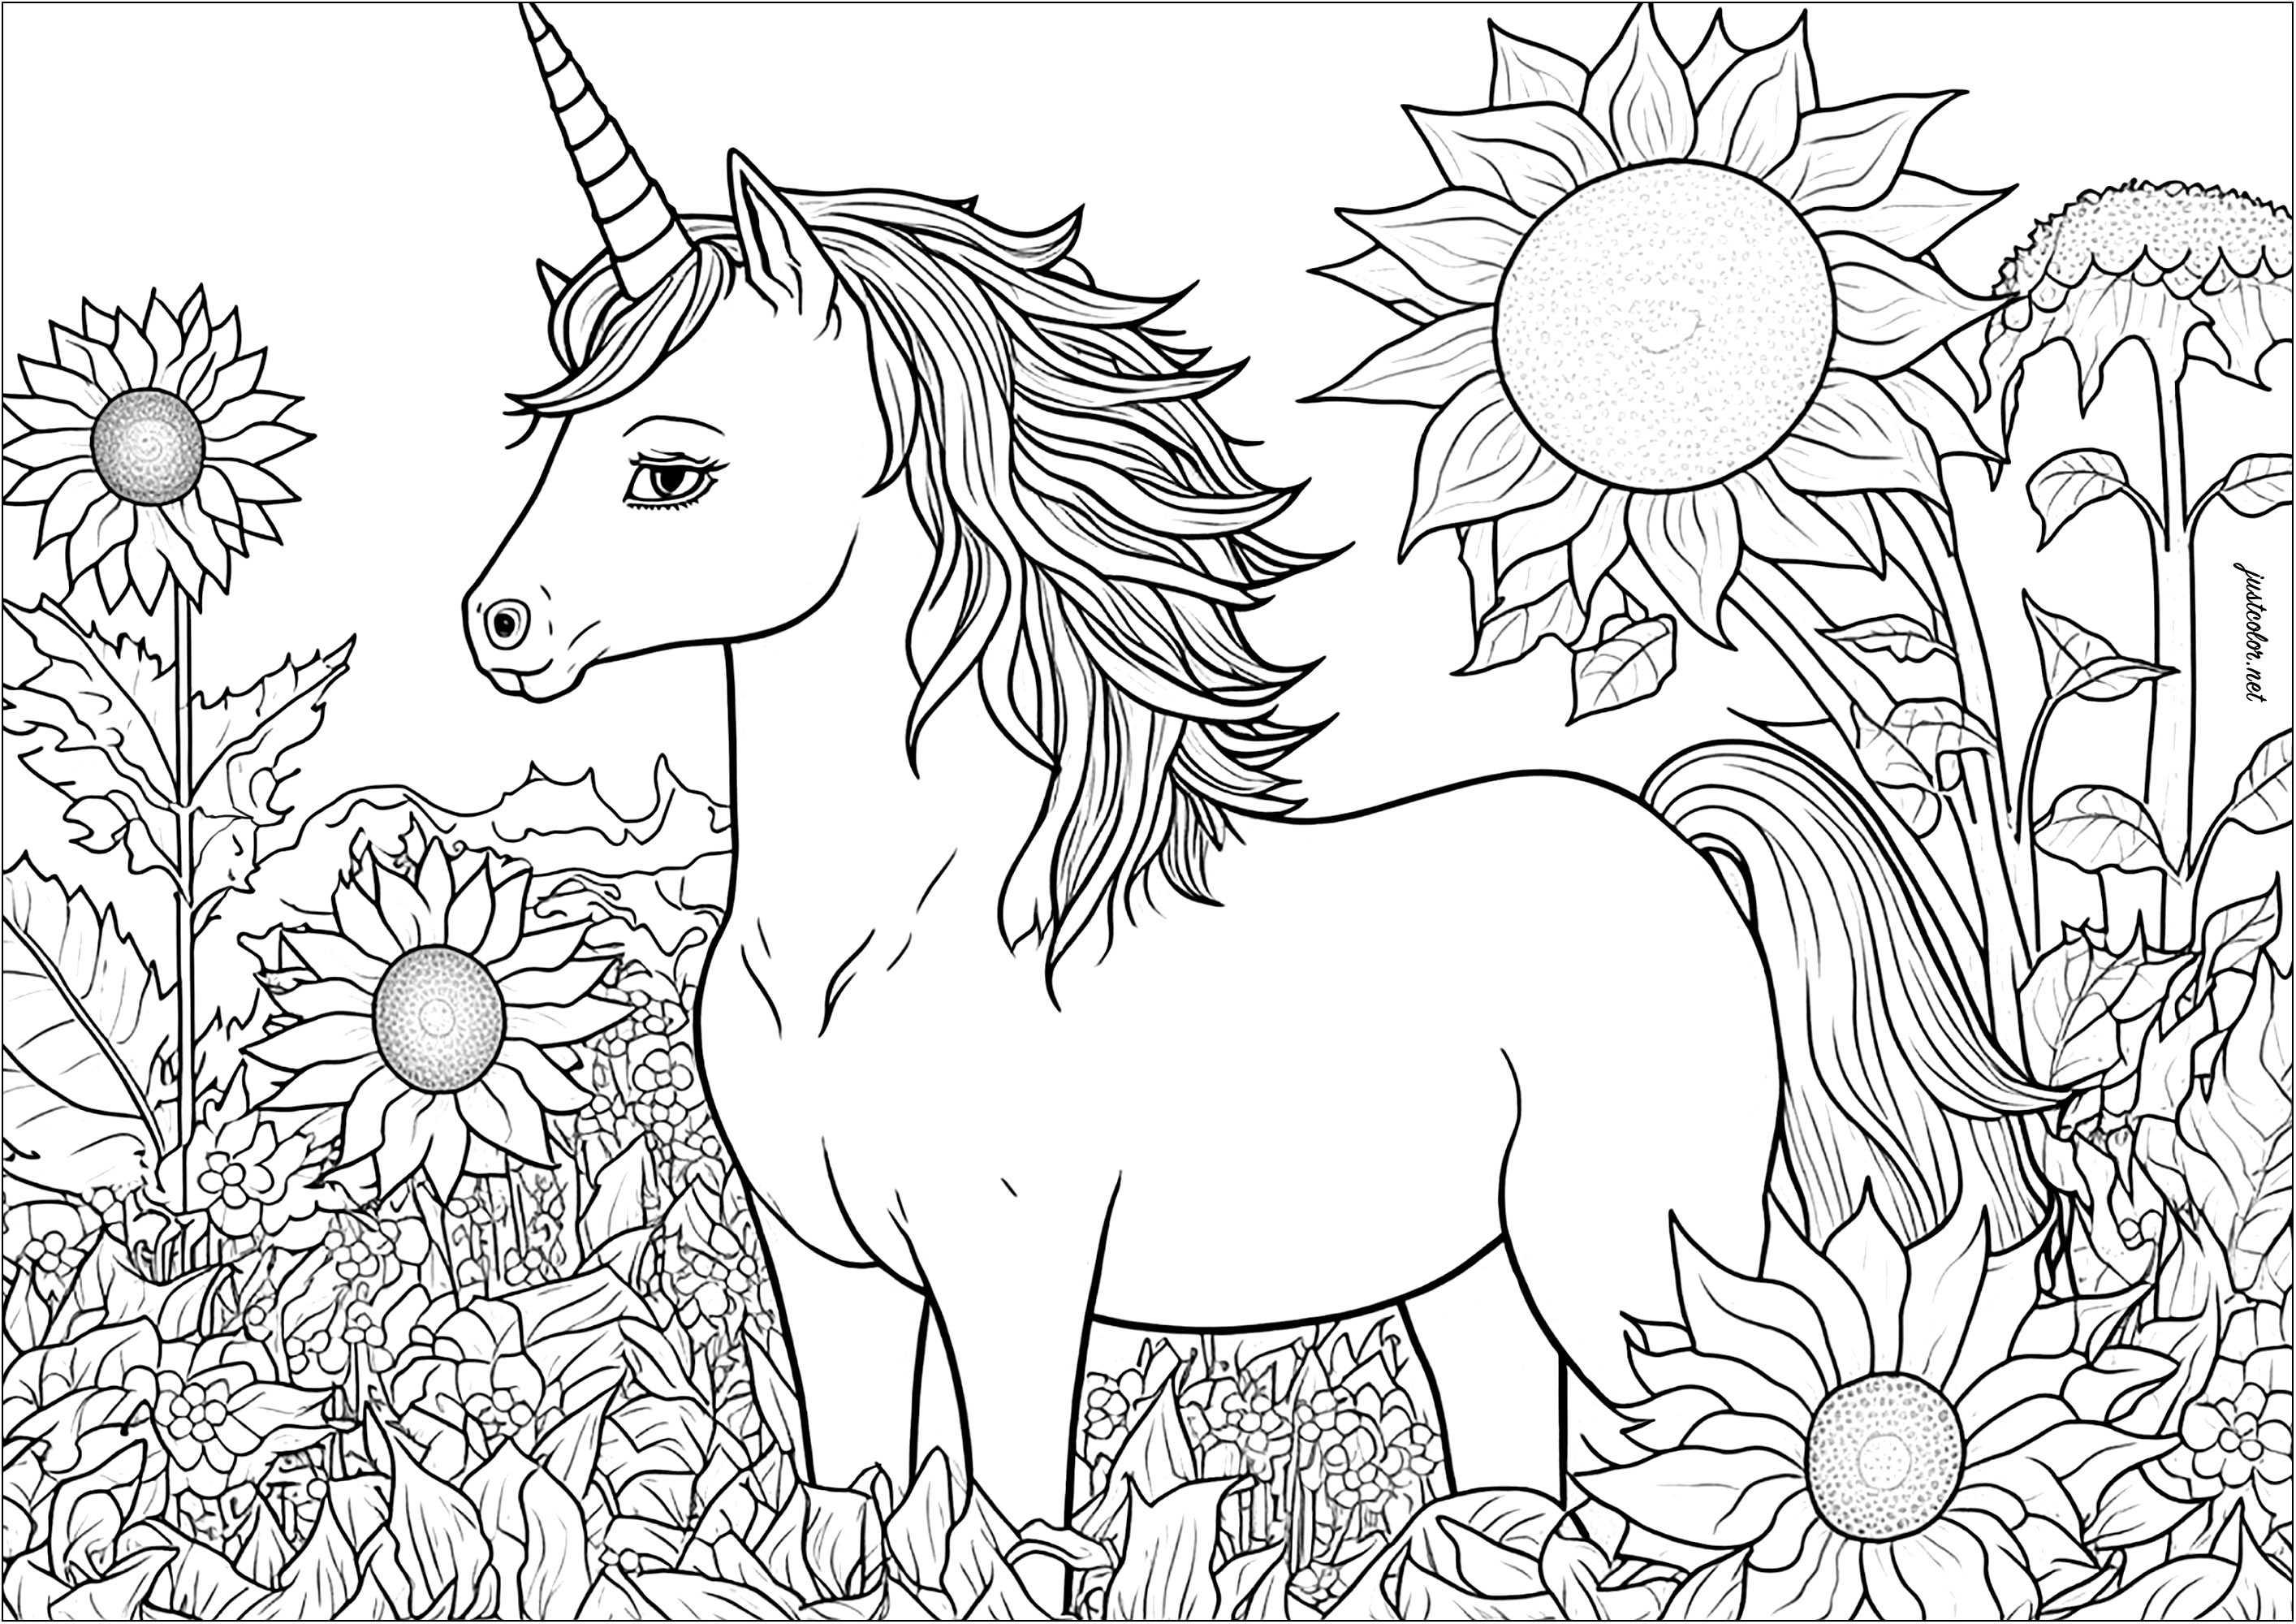 Unicornio y girasoles para colorear. Muchos detalles para colorear, ya sea en las flores, la vegetación o la melena de este hermoso unicornio.
Un coloreado que es una auténtica invitación a la contemplación y la meditación.